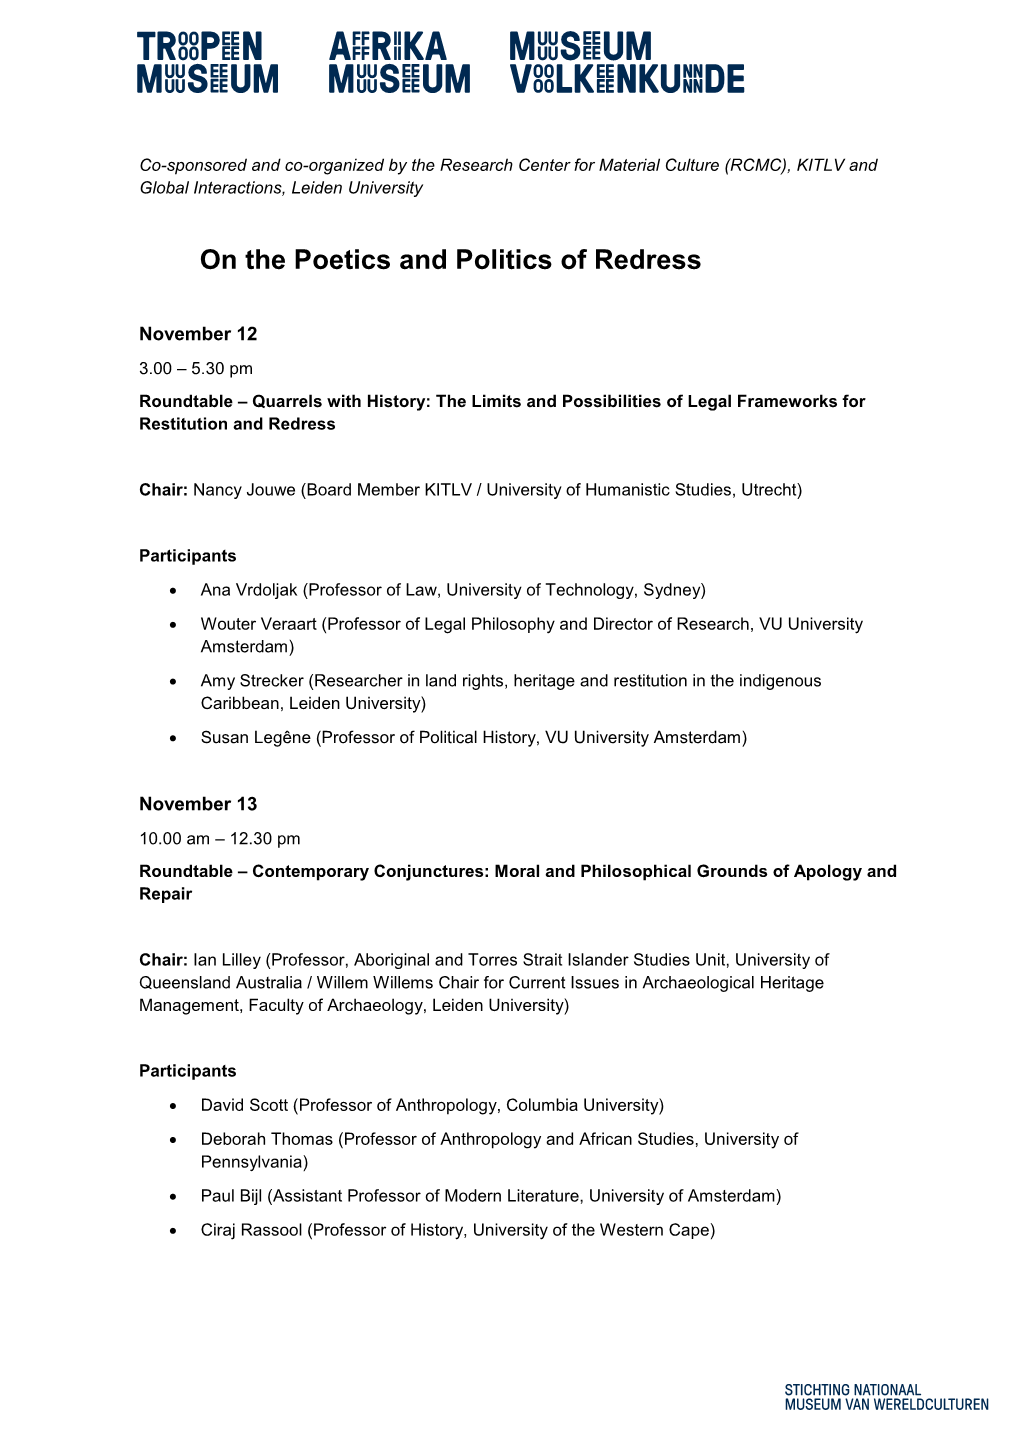 Poetics and Politics of Redress Program